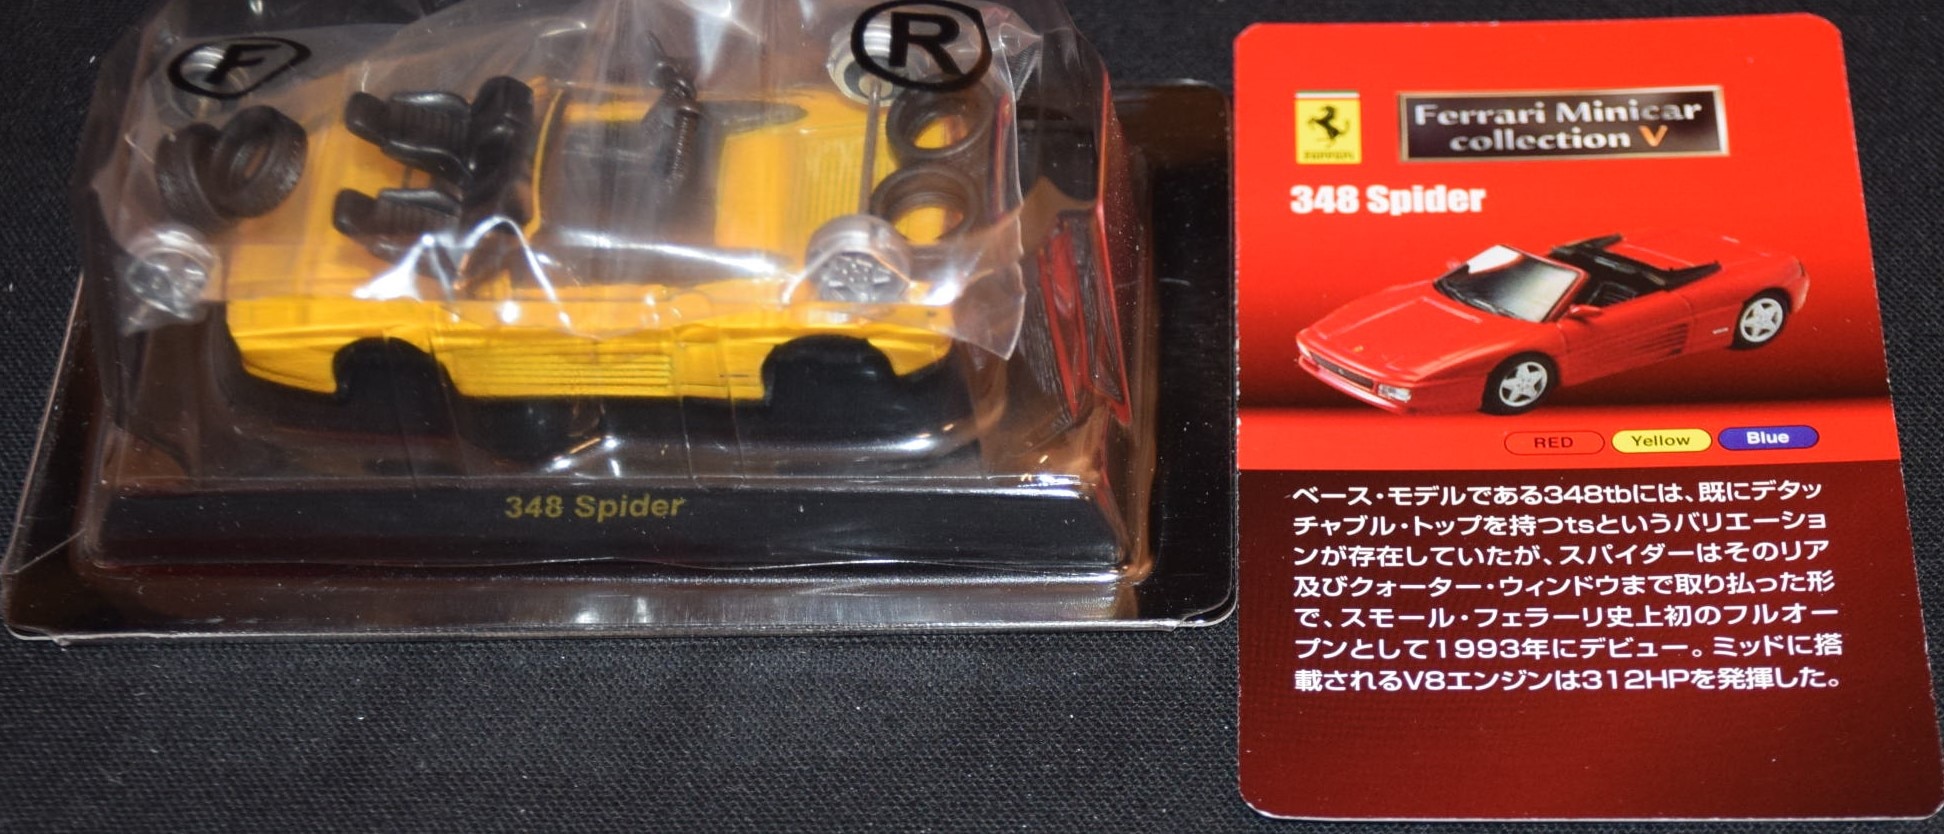 京商 フェラーリ ミニカーコレクションv 348 Spider 黄色 Merchpunk